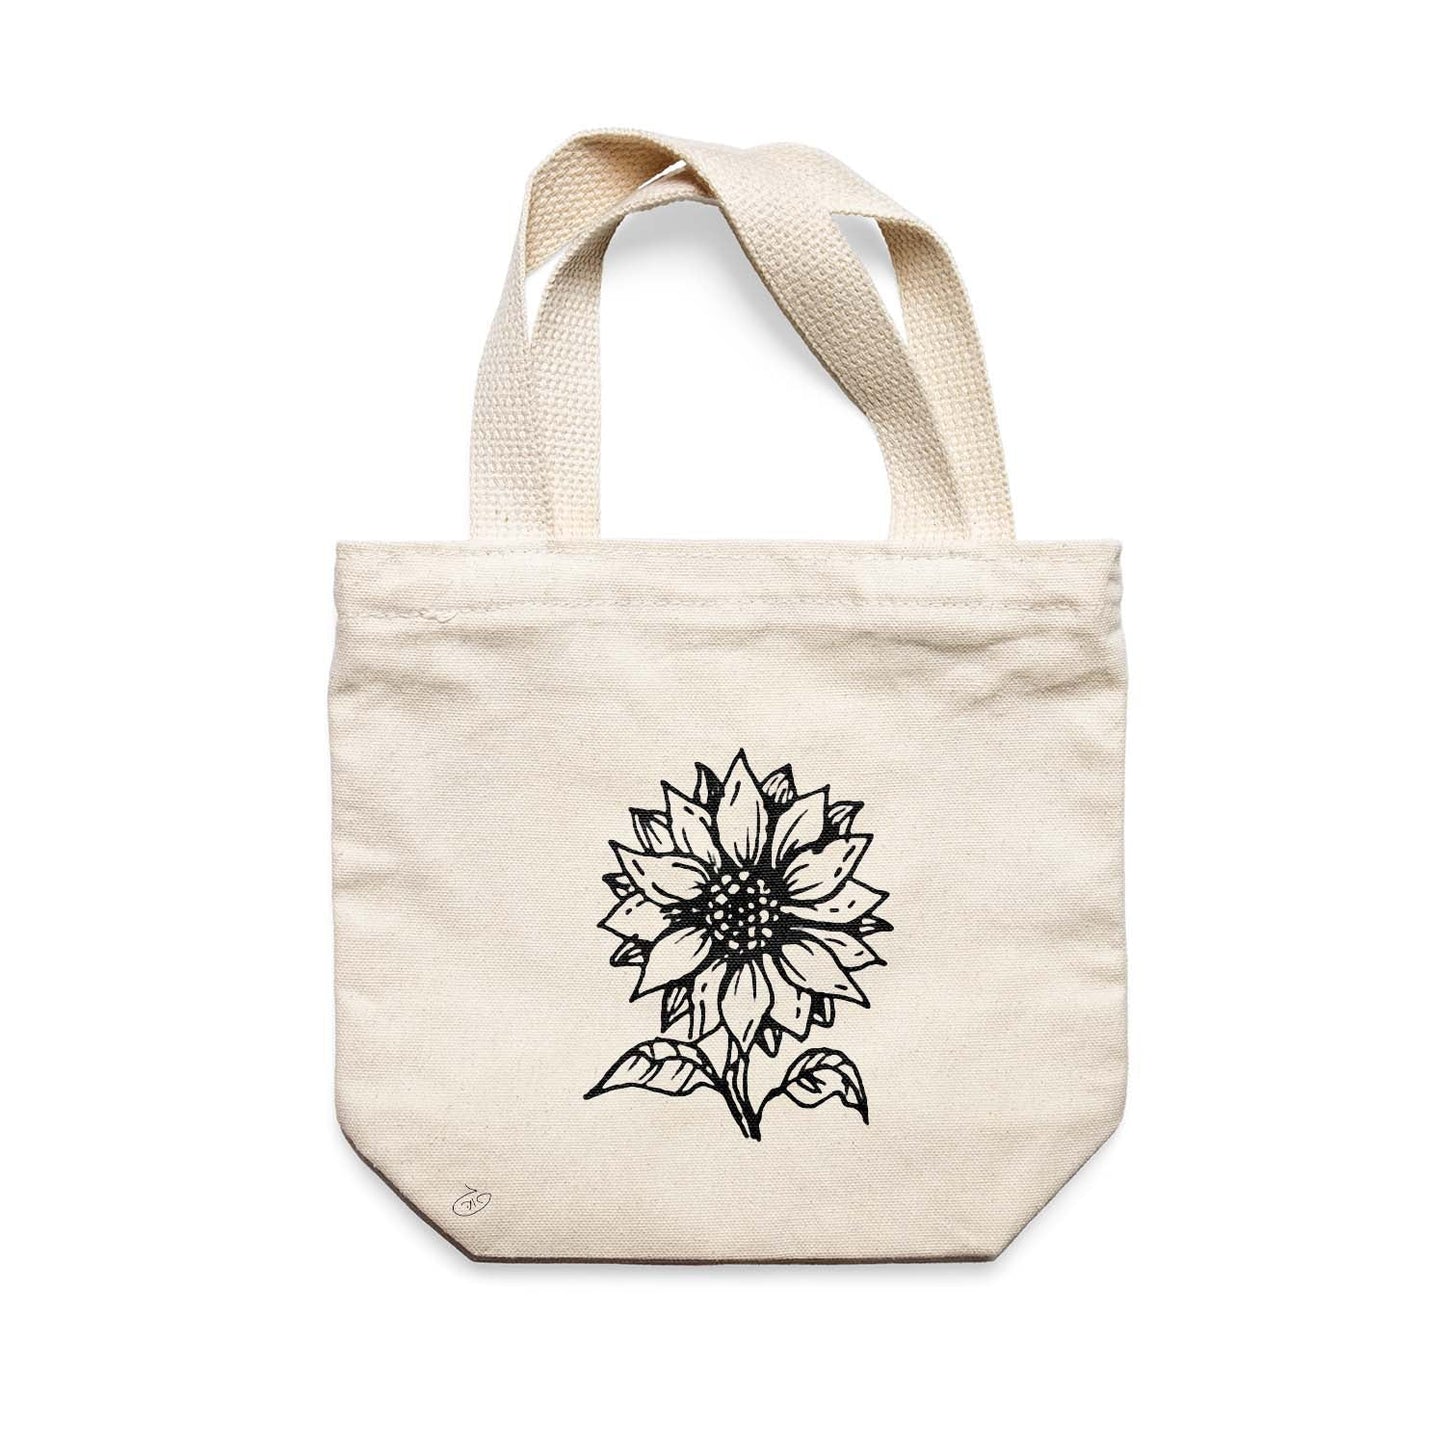 תיק צד לנשים וגברים מבד 100% כותנה טבעית בעיצוב Flower - Bella Tote Bag מציור מקורי של גאיה